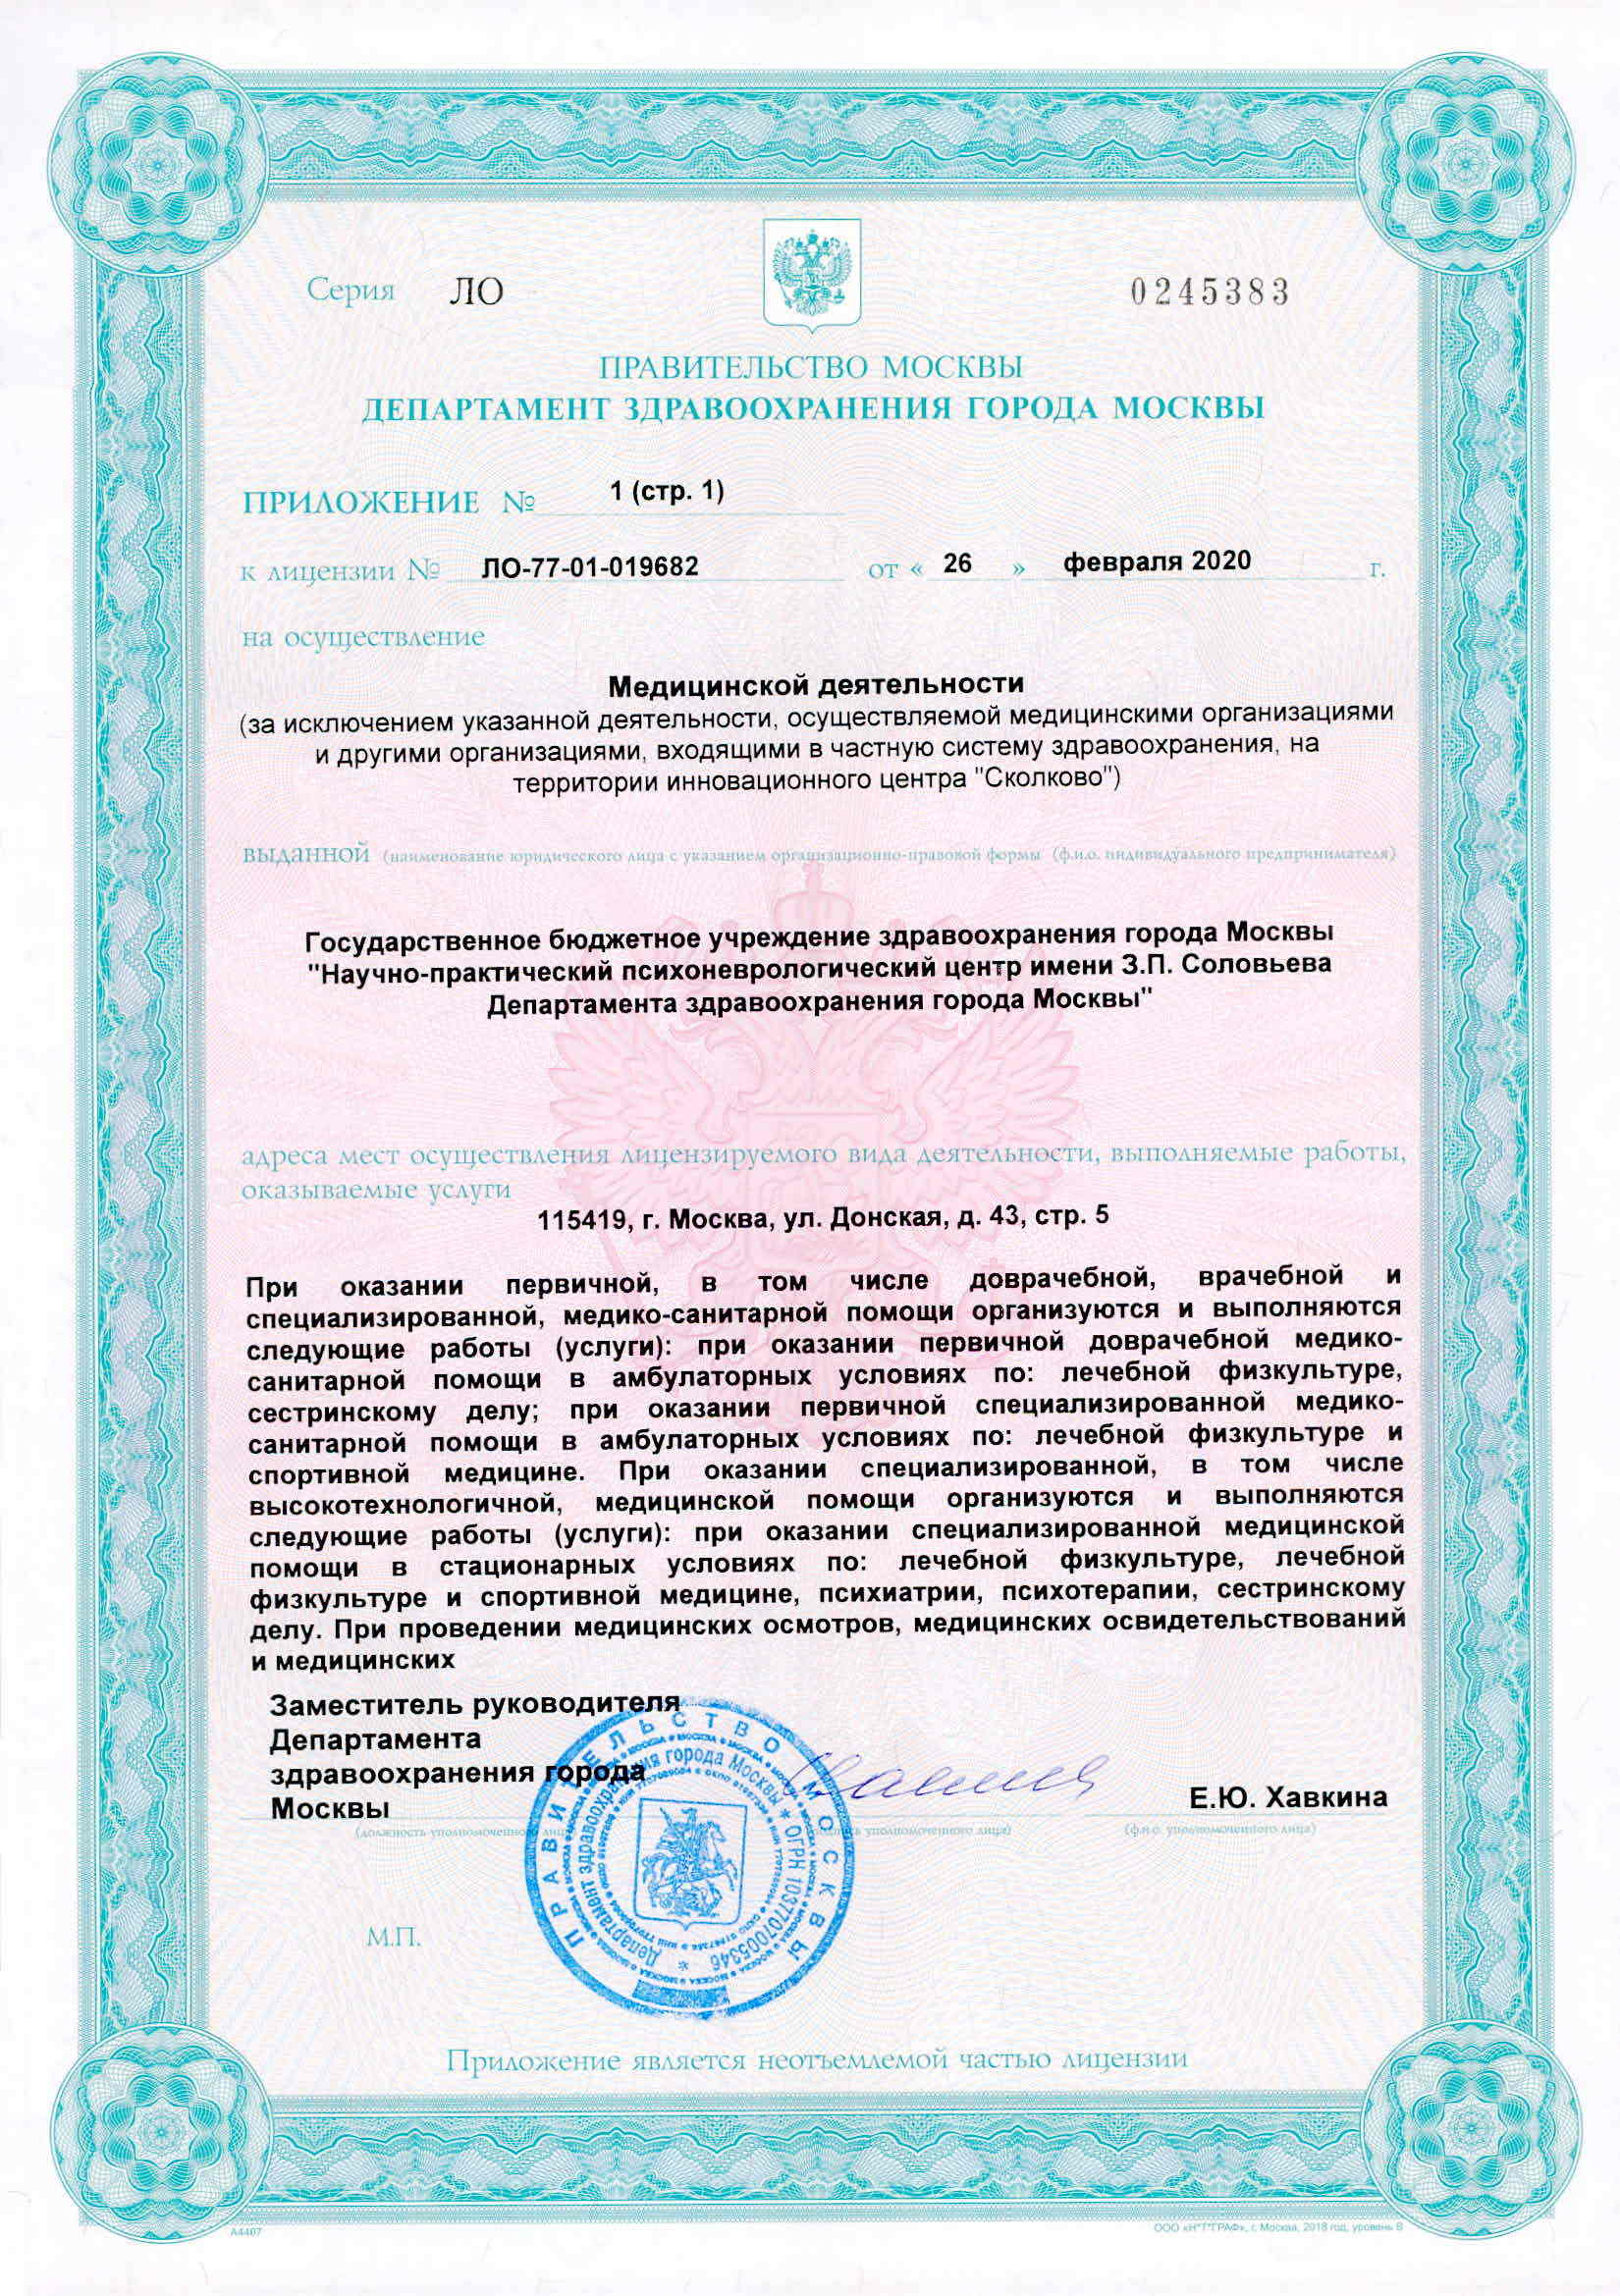 Клиника неврозов им. З.П. Соловьева лицензия №17